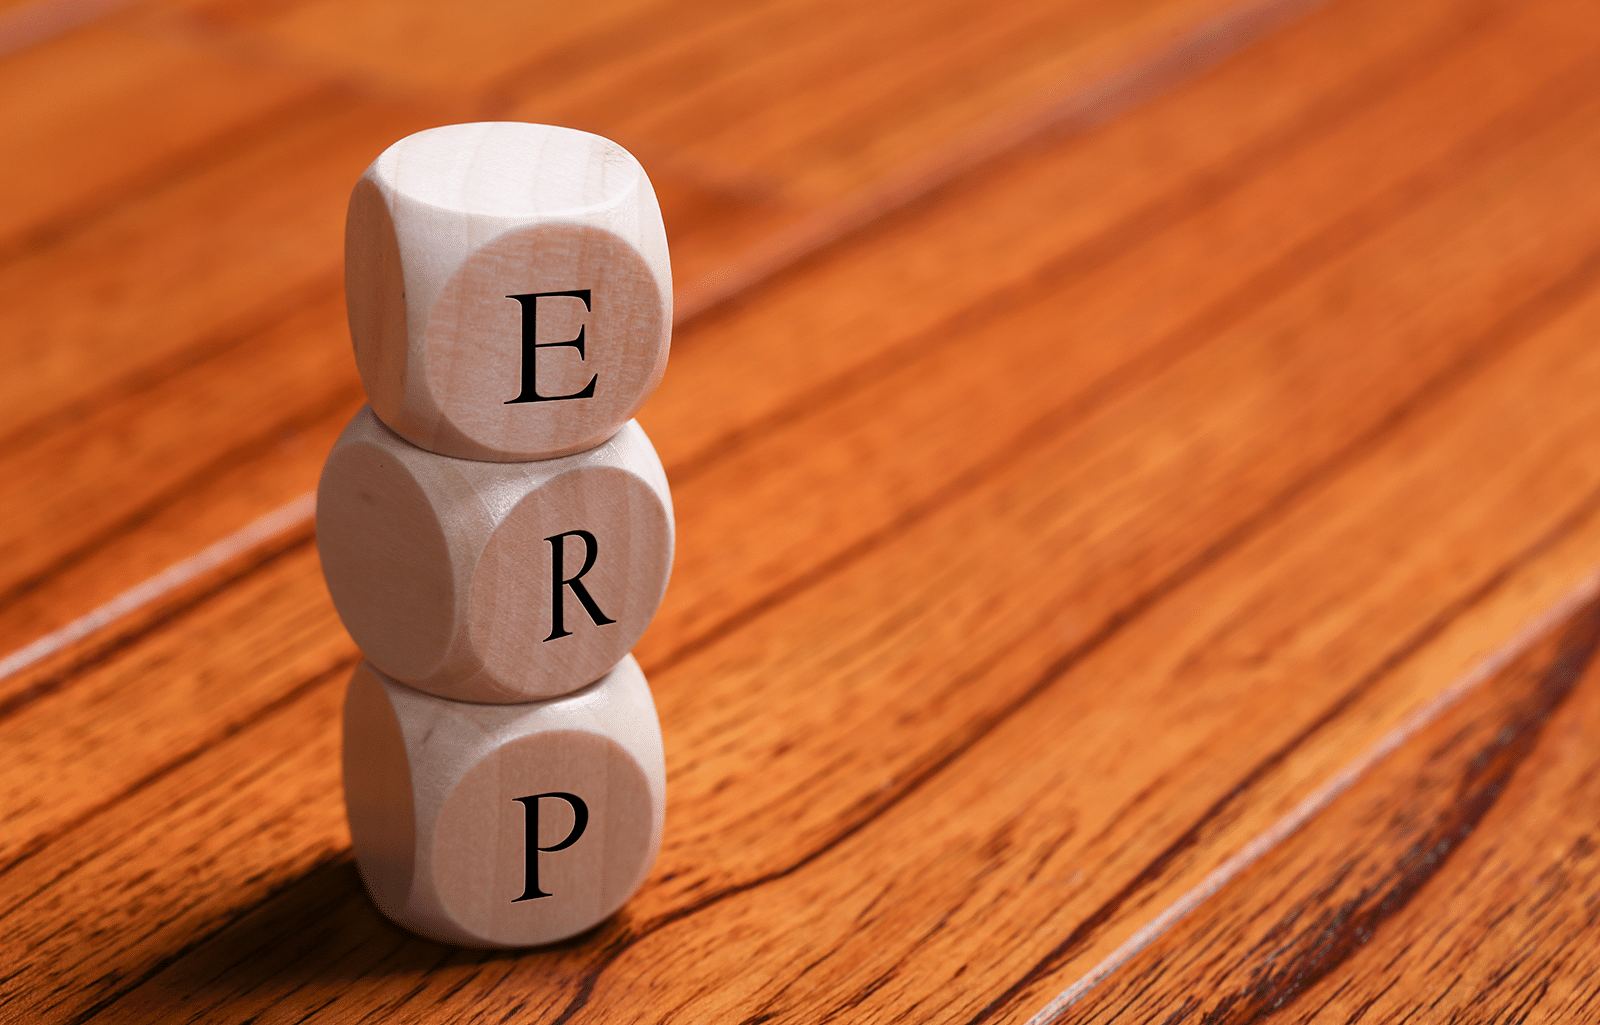 Sistemi ERP cosa sono e perché sono fondamentali per le aziende | smeup